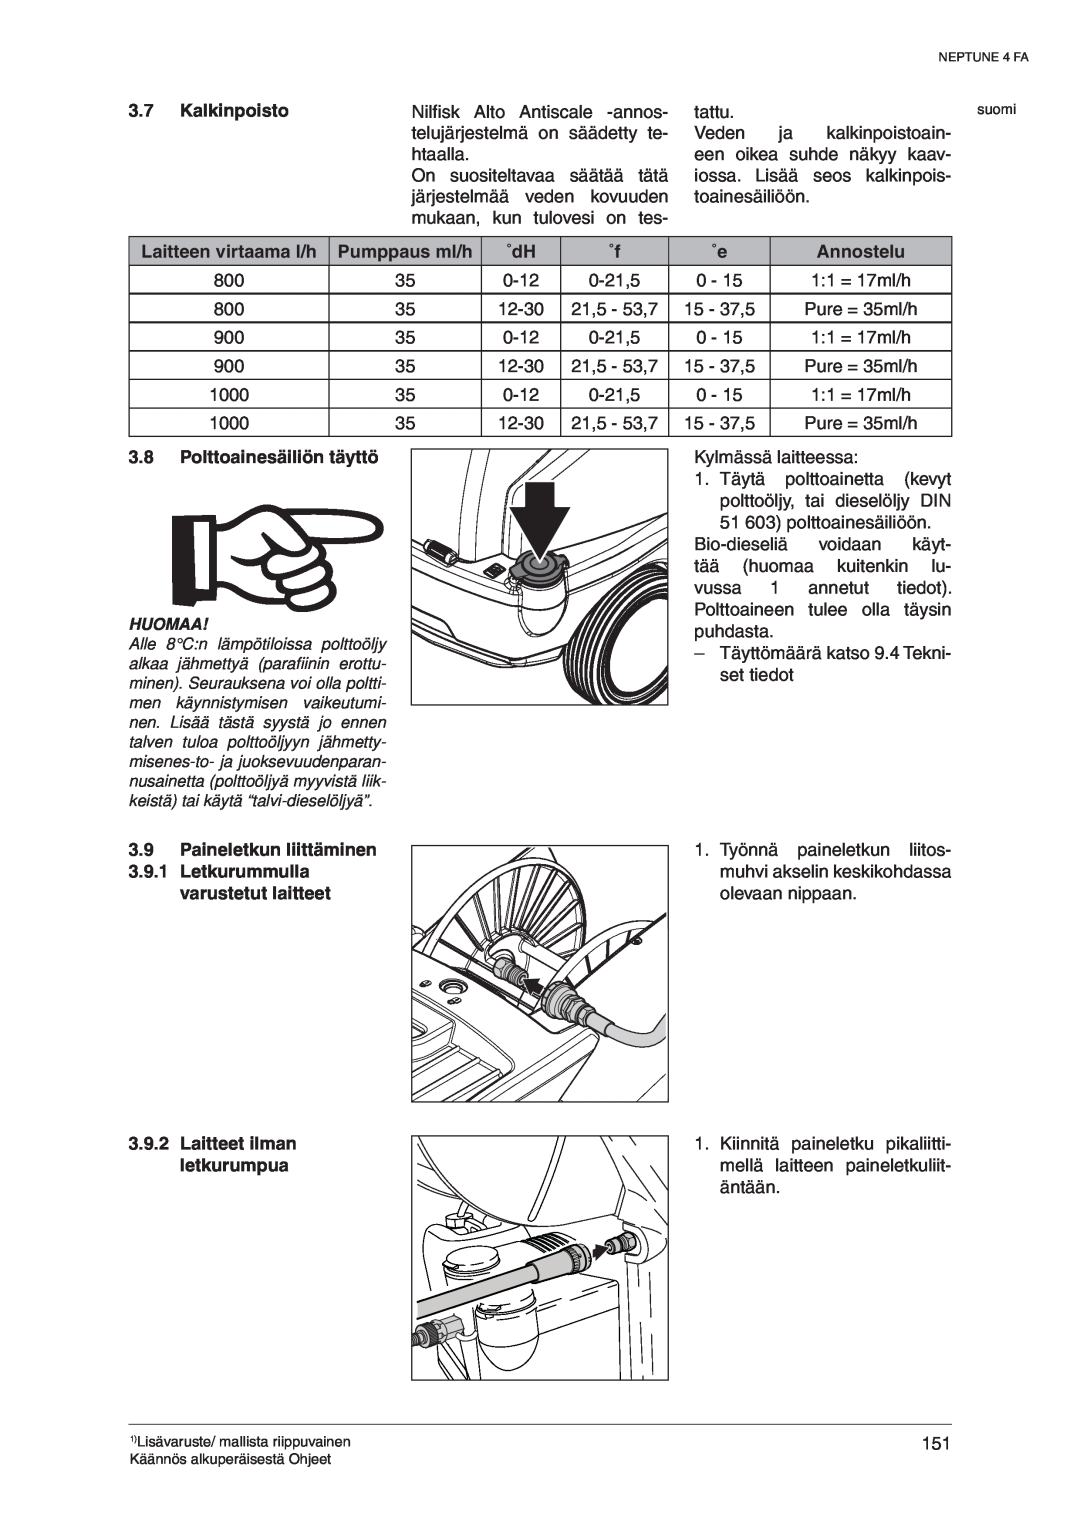 Nilfisk-ALTO 107140469 D manual Kalkinpoisto, Laitteen virtaama l/h, Pumppaus ml/h, Annostelu, Polttoainesäiliön täyttö 